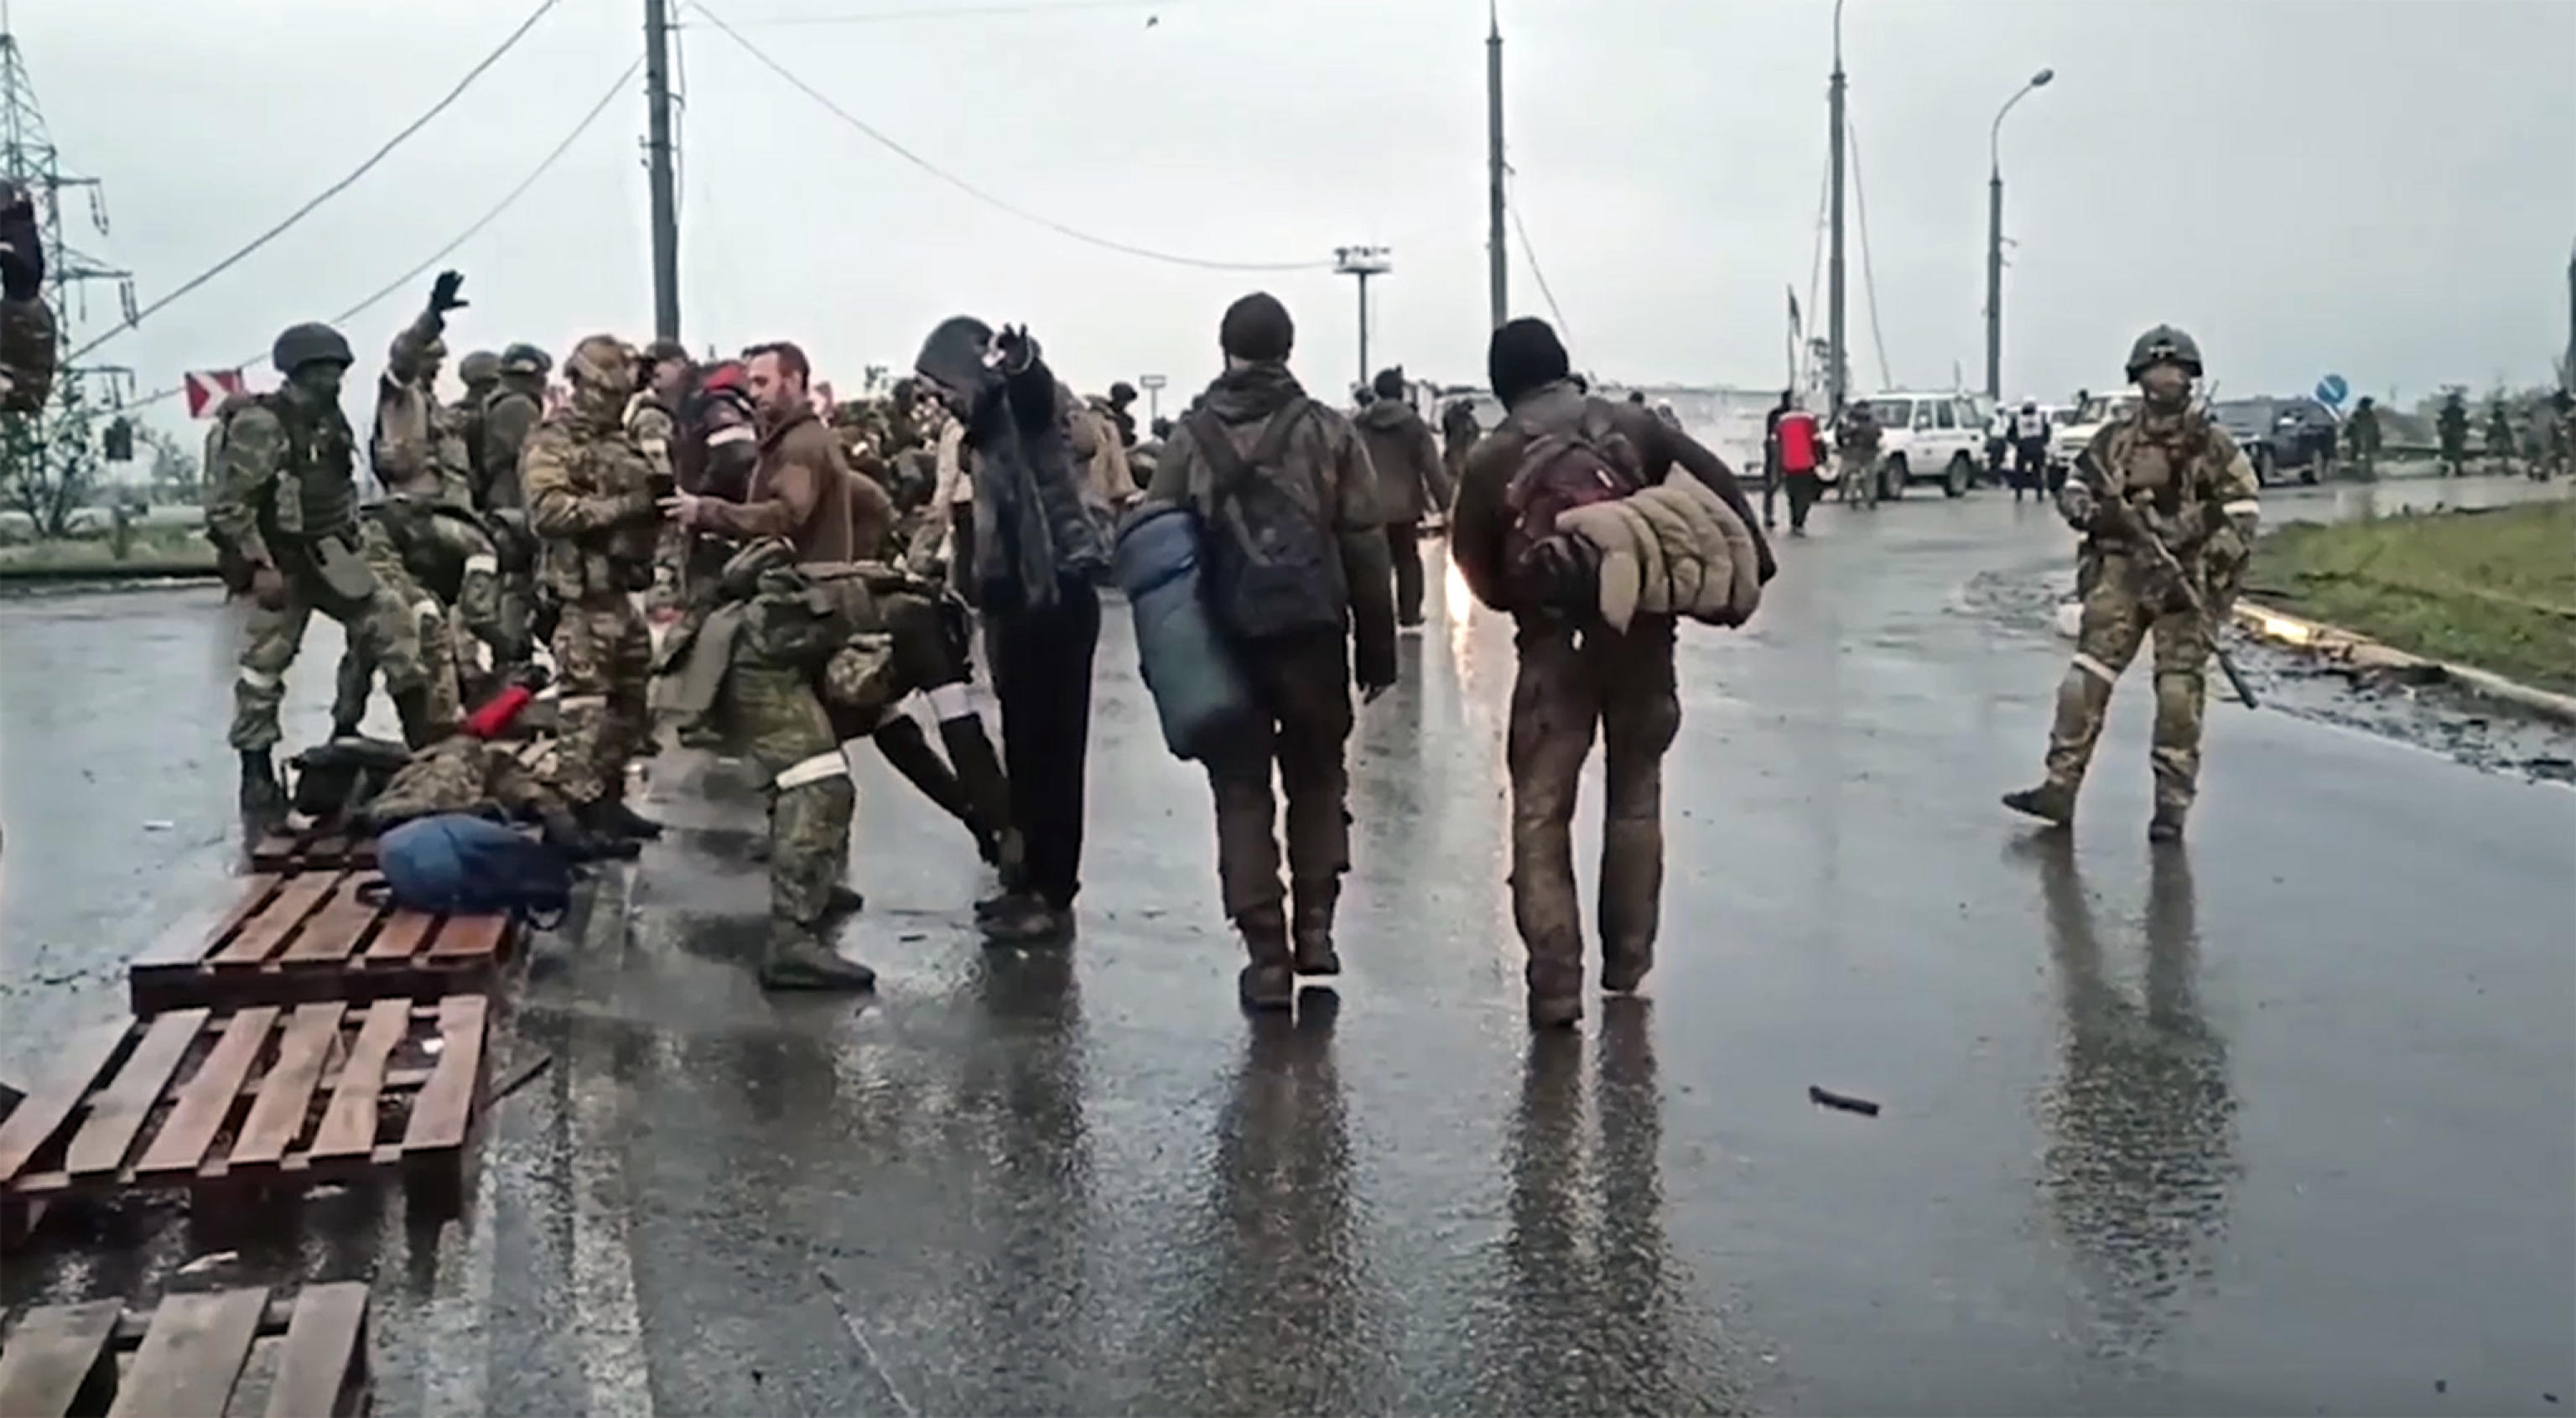 L’Ucraina: 200 corpi trovati a Mariupol sotto le macerie di un rifugio – Il live blog